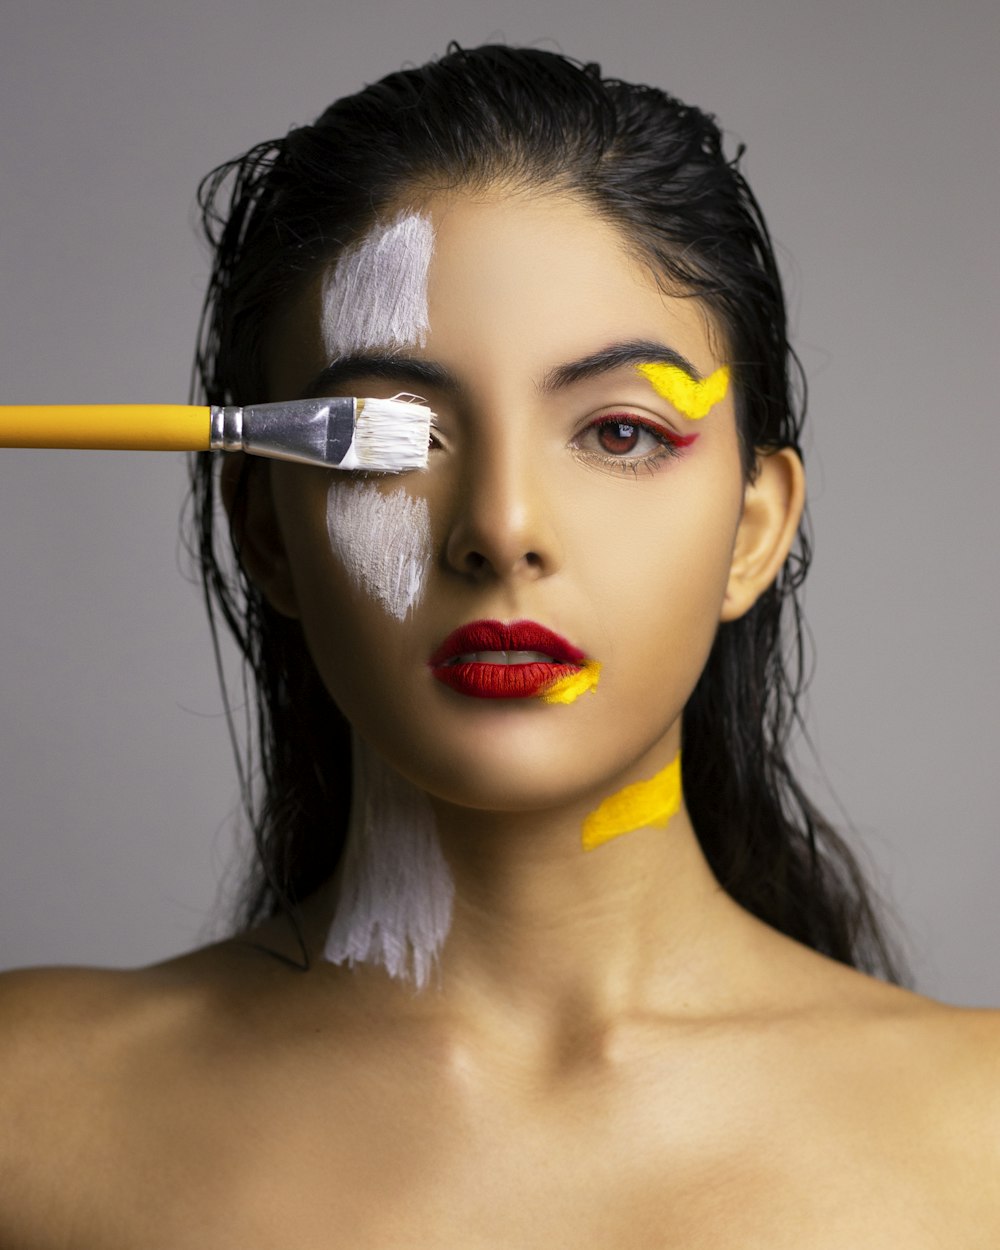 Femme avec du rouge à lèvres rouge tenant un pinceau jaune